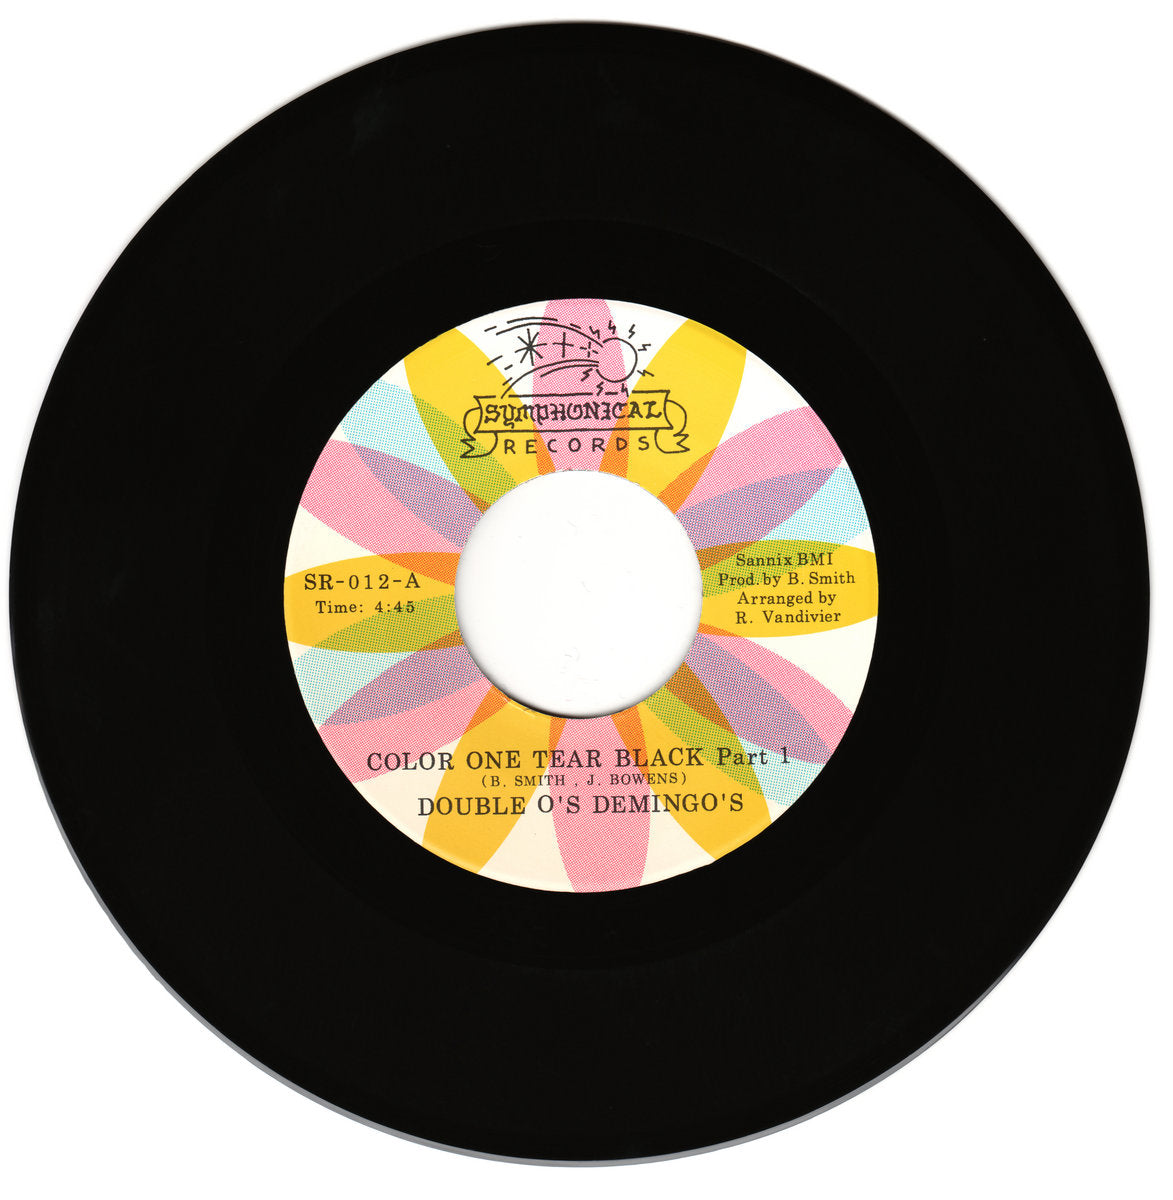 DOUBLE O'S DEMINGO'S - COLOR ONE TEAR BLACK Part 1 / Part 2 Vinyl 7"